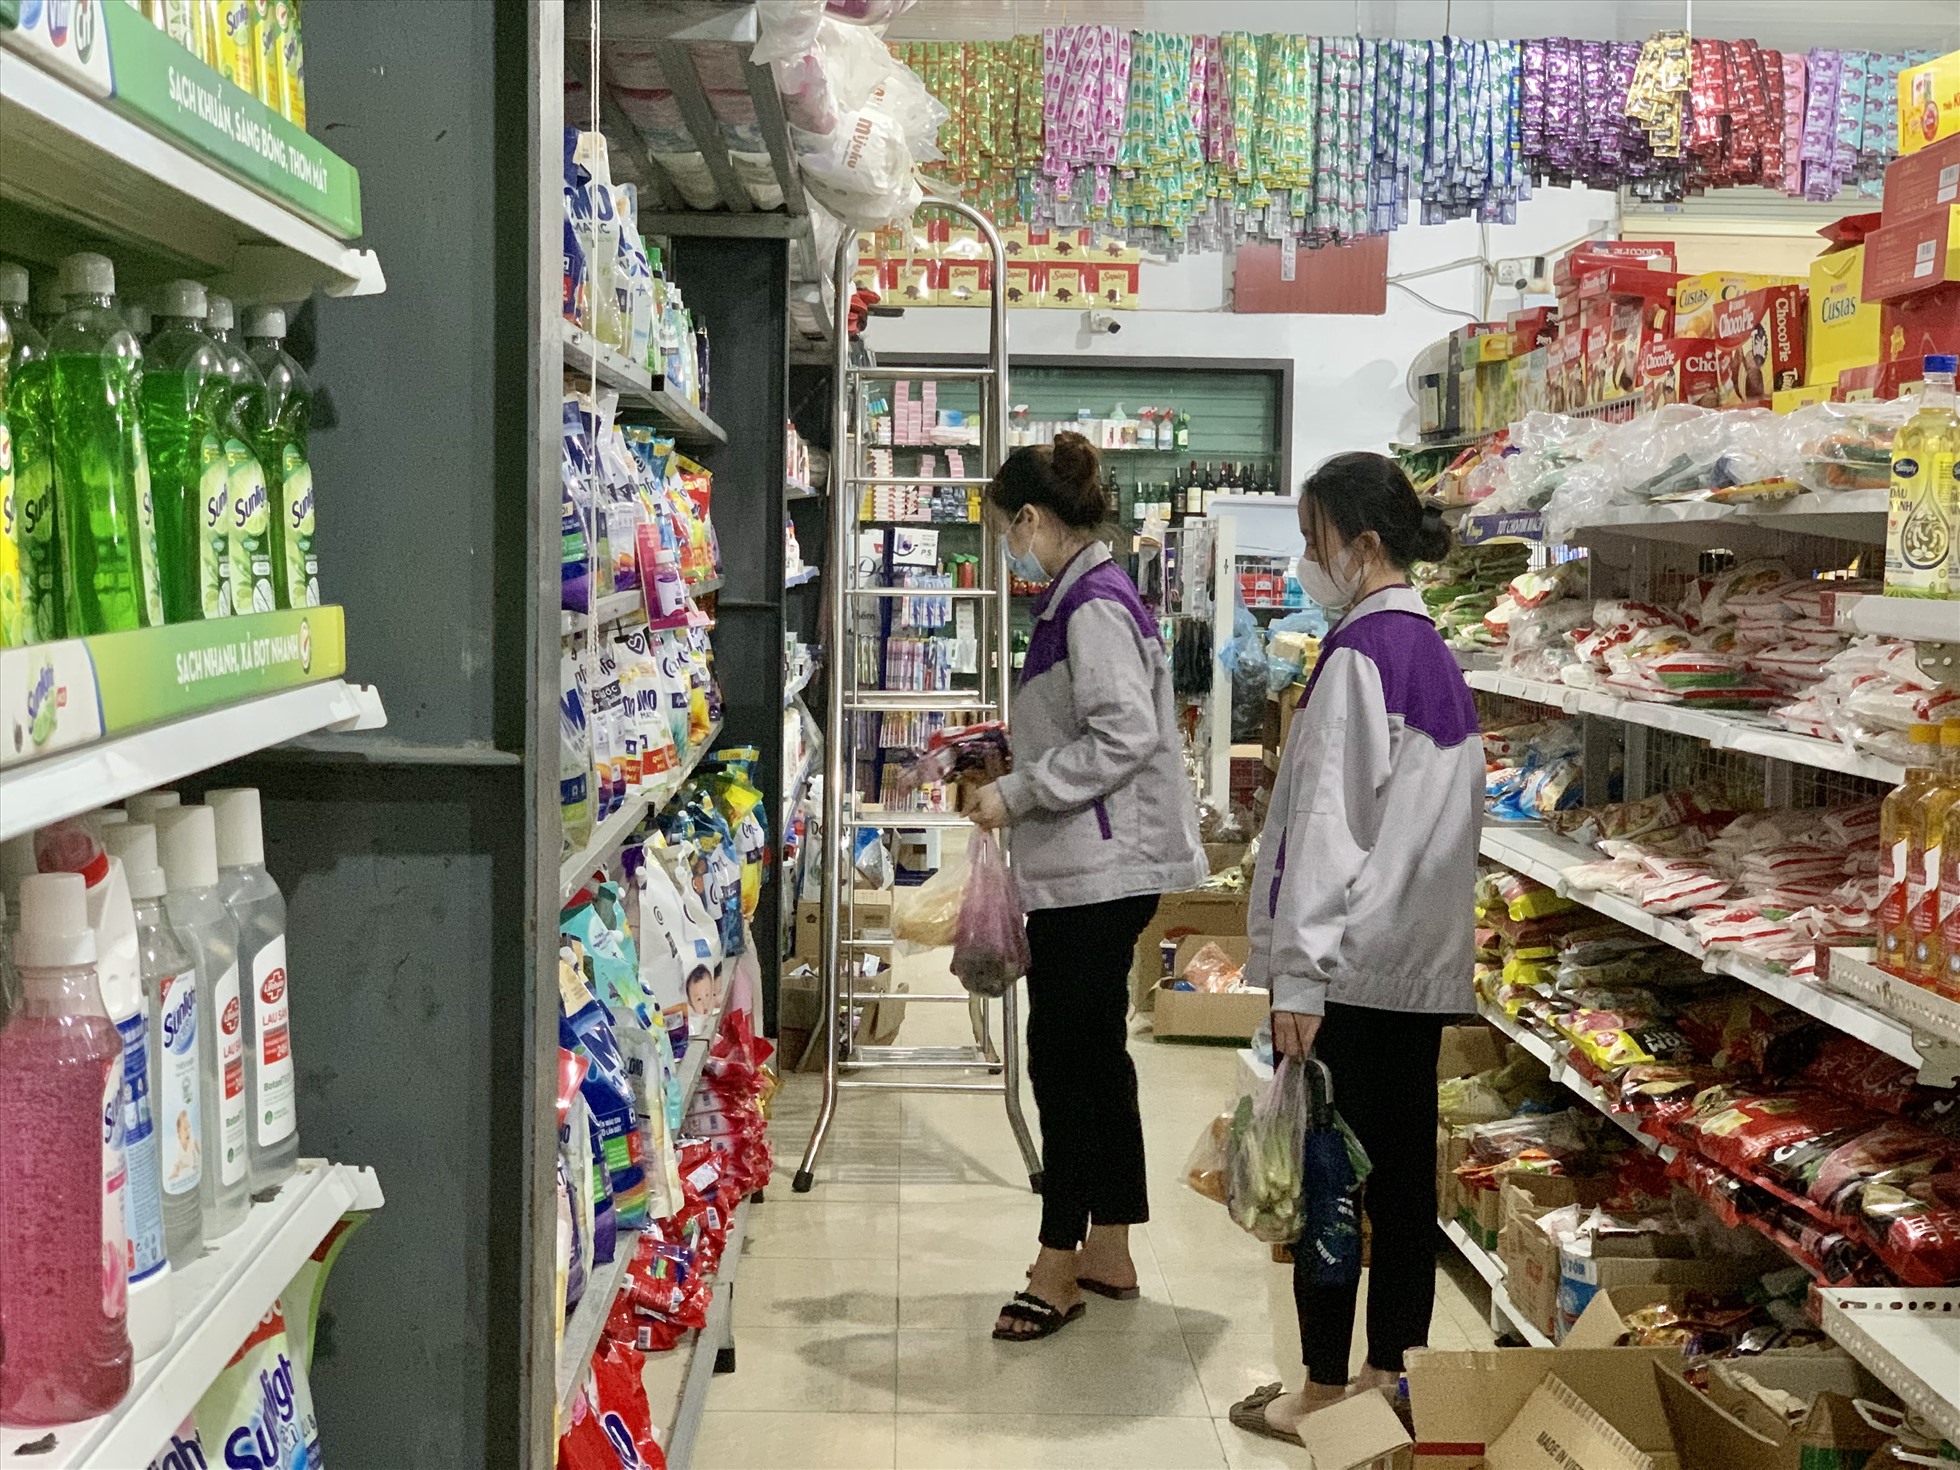 “Đau đầu nhất là khi ra chợ, hay ghé quán hoá không biết mua gì, ăn gì cho hợp túi tiền” Chị Tưởng cho biết. Ảnh: Quỳnh Trang